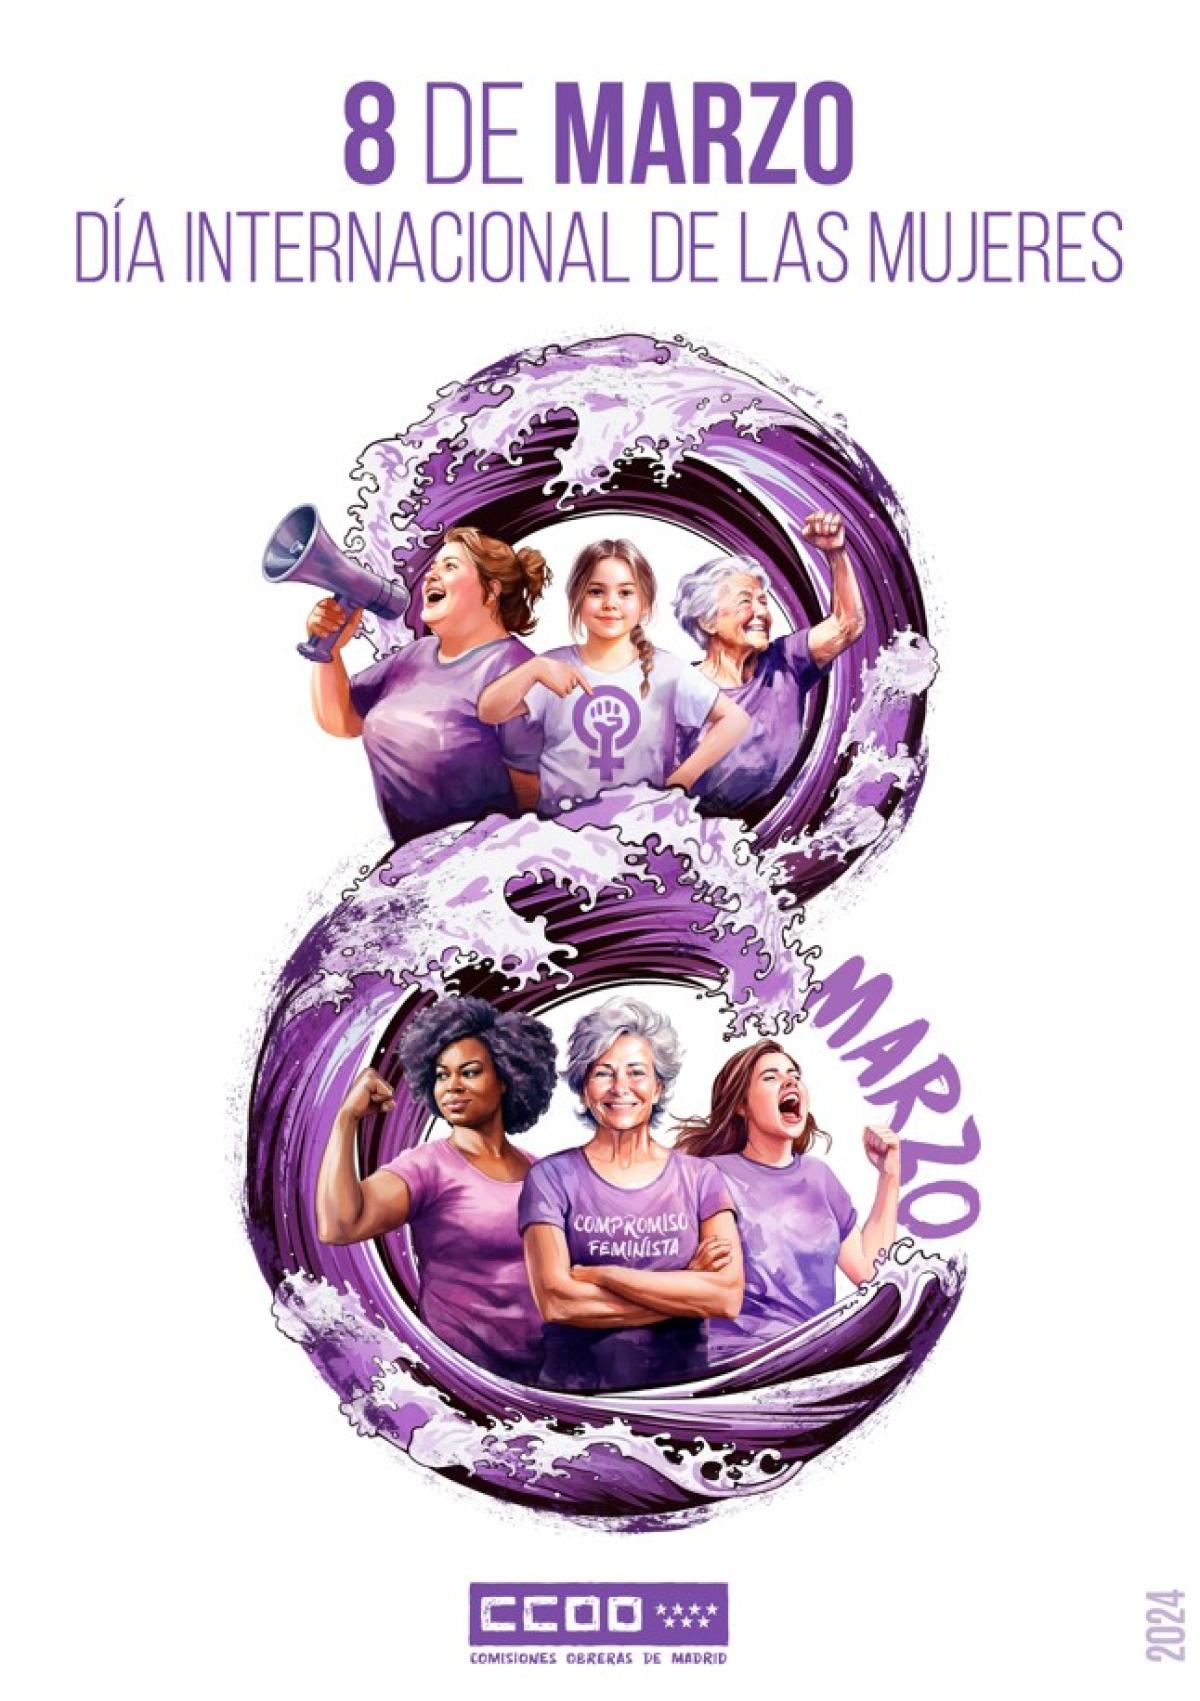 8 de marzo, Día Internacional de las Mujeres